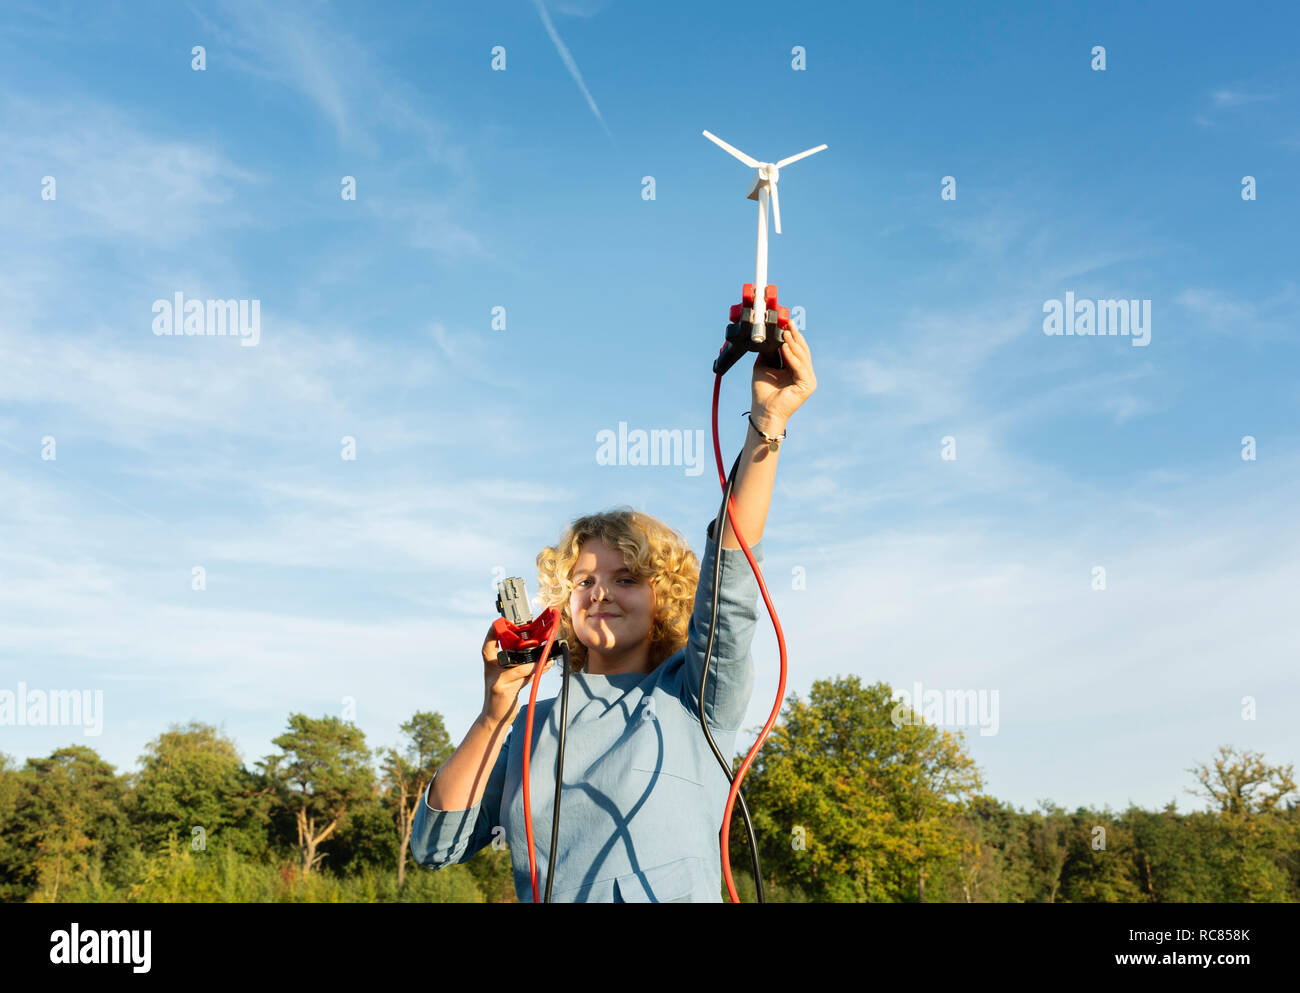 Ragazza adolescente alimentazione luce LED in miniatura con turbina a vento, Paesi Bassi Foto Stock